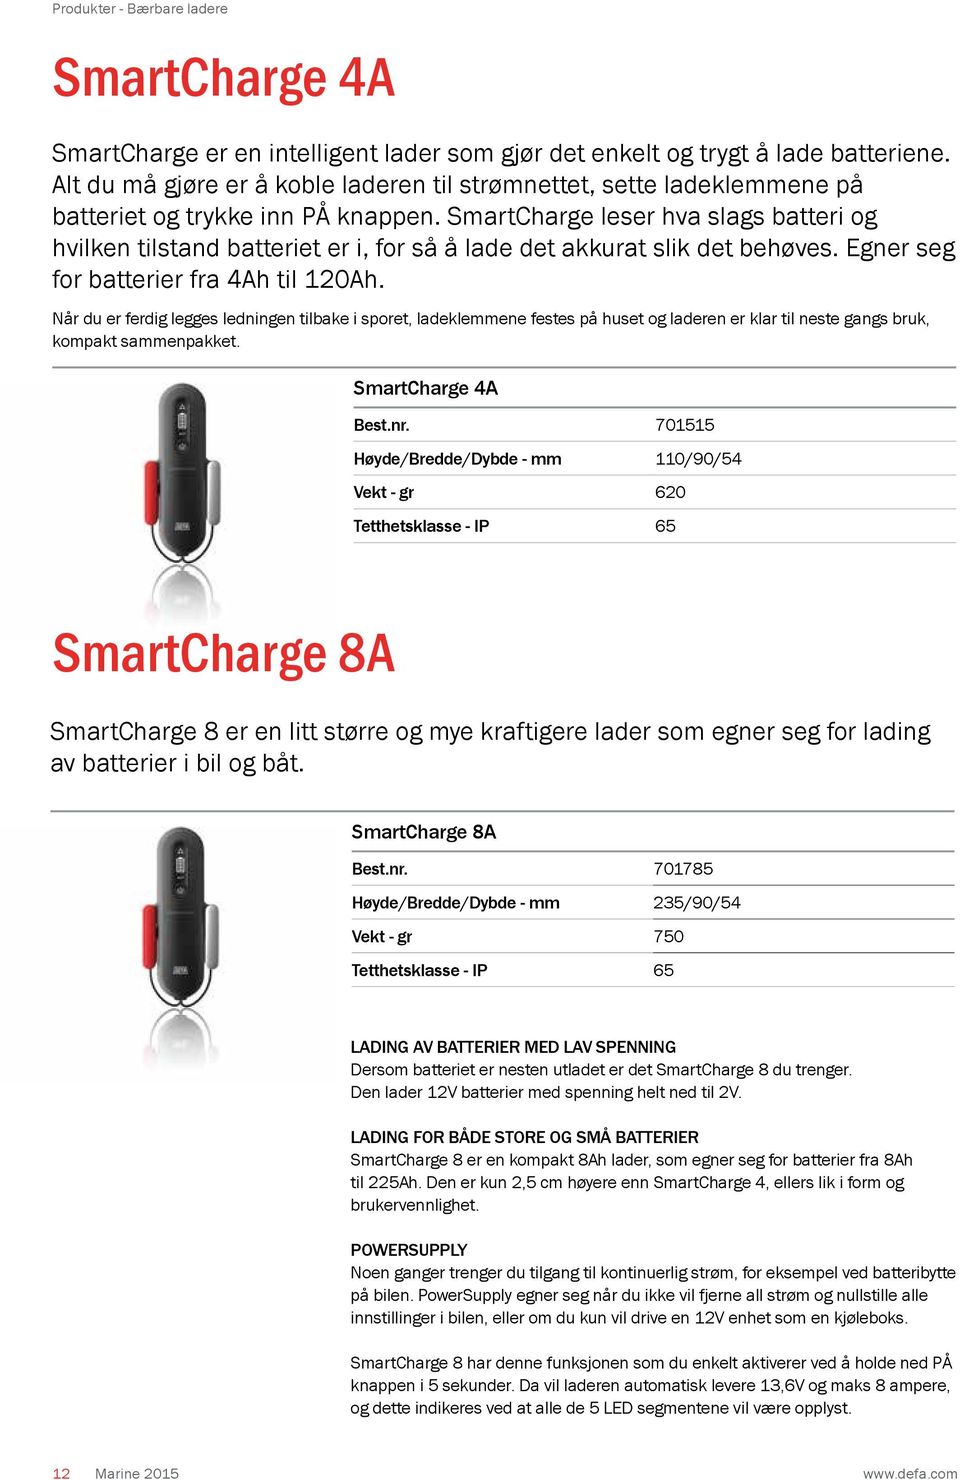 SmartCharge leser hva slags batteri og hvilken tilstand batteriet er i, for så å lade det akkurat slik det behøves. Egner seg for batterier fra 4Ah til 120Ah.